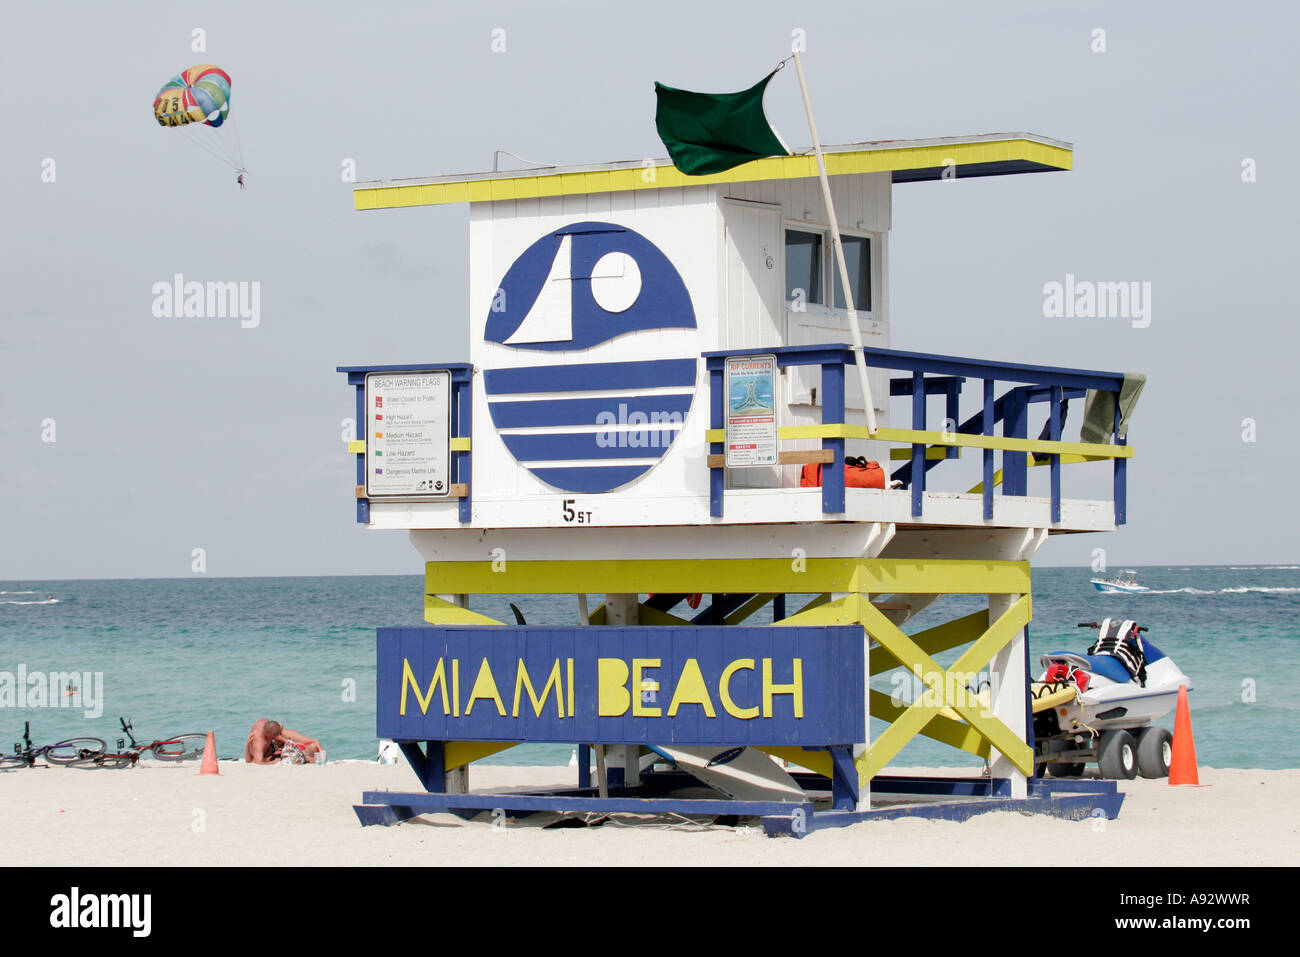 Miami Beach Florida, littoral de l'océan Atlantique, station de maître nageur, cabane, tour, soleil, parapente, parachute ascensionnel, tracas, traque pour les visiteurs Banque D'Images